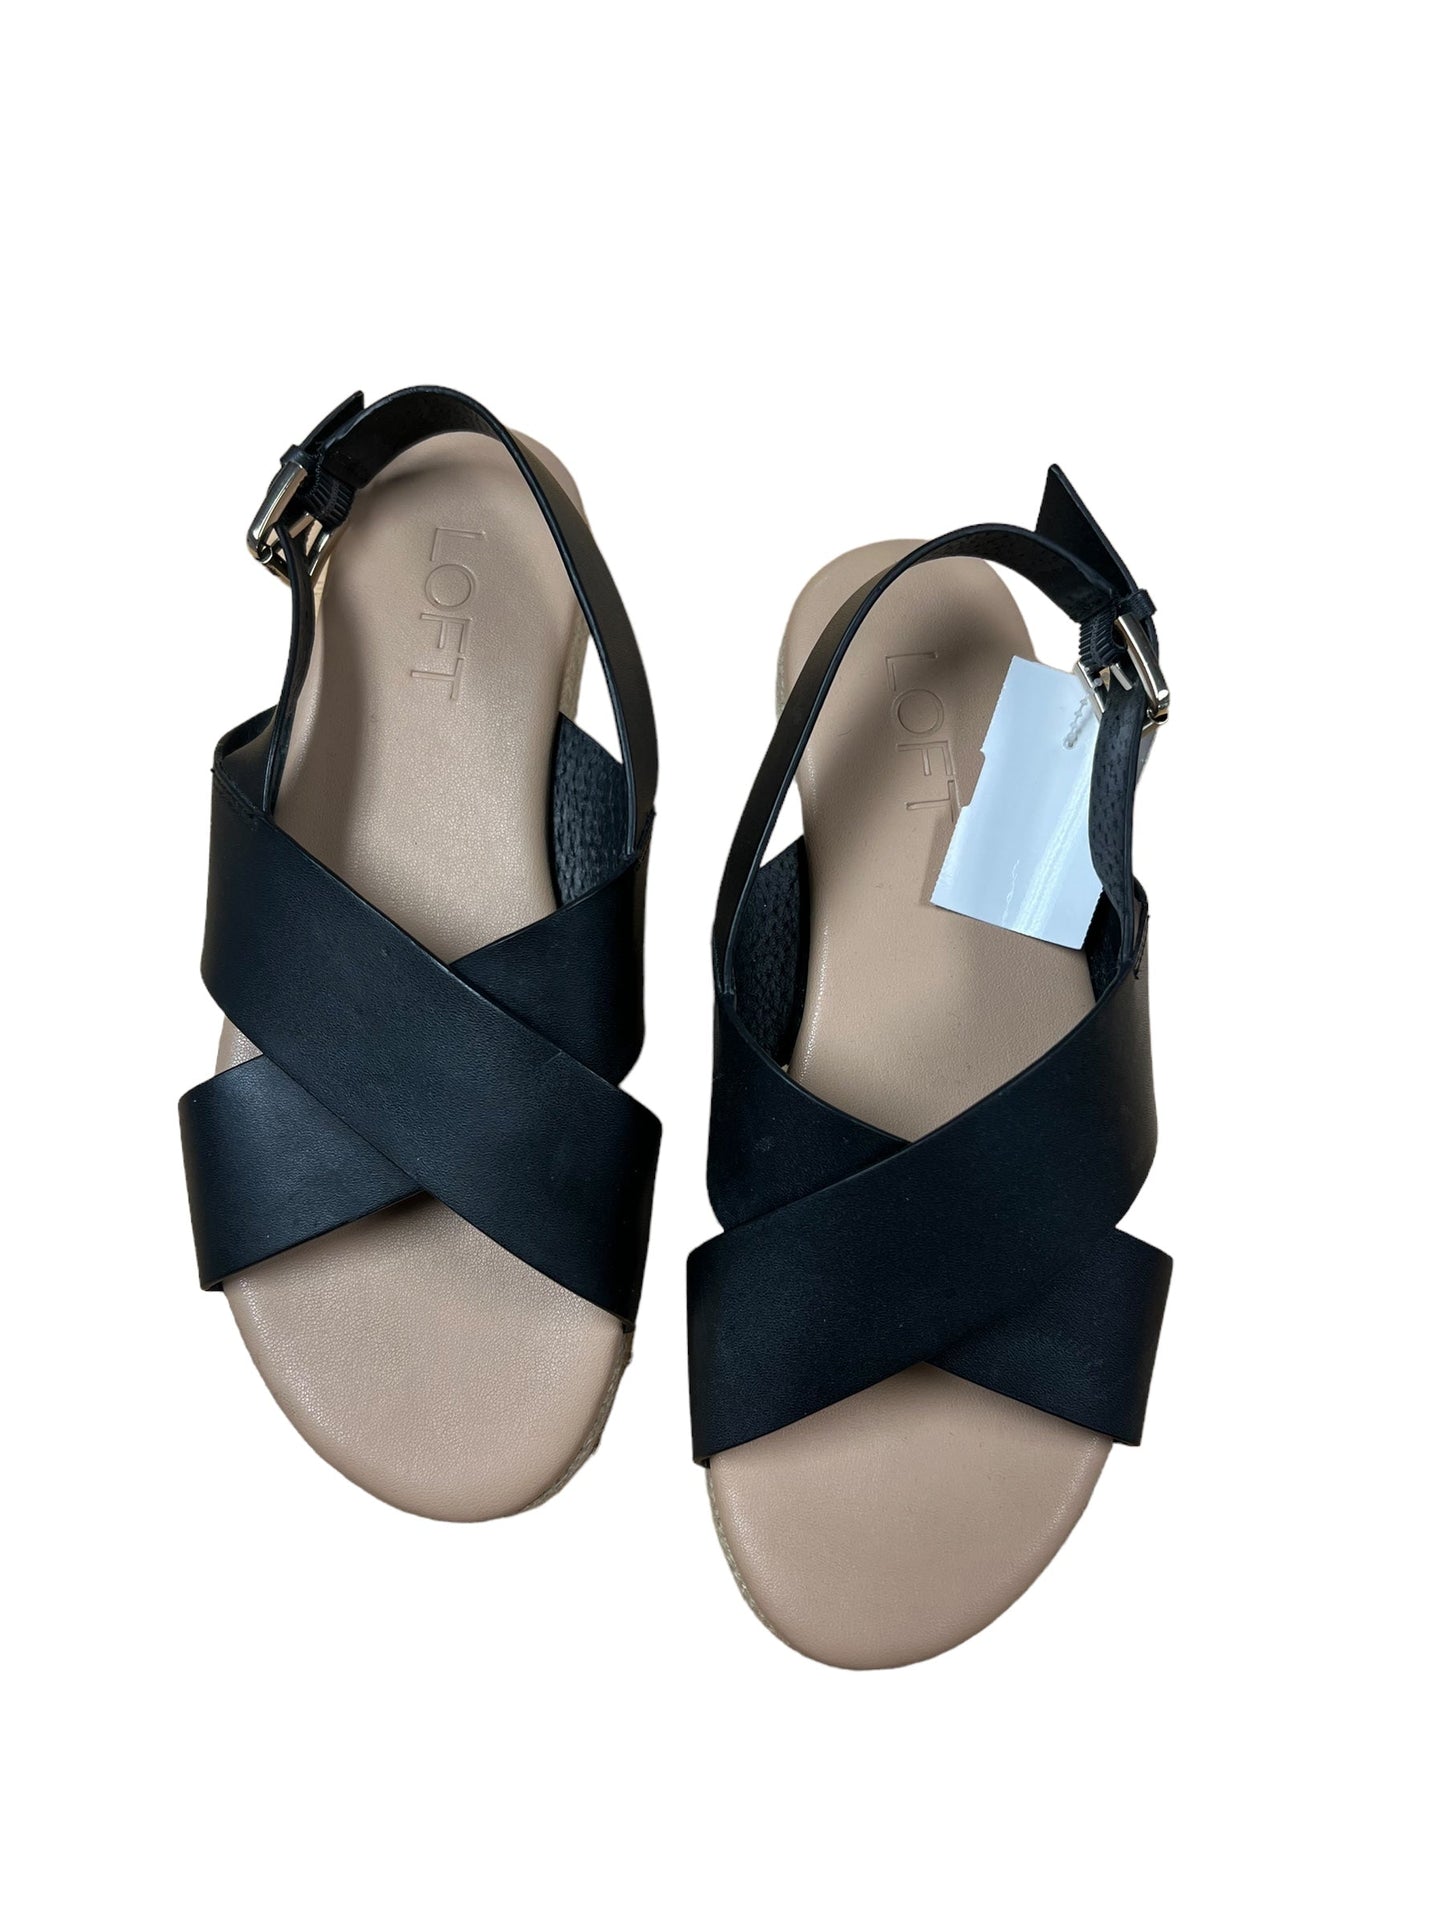 Sandals Flats By Loft  Size: 6.5